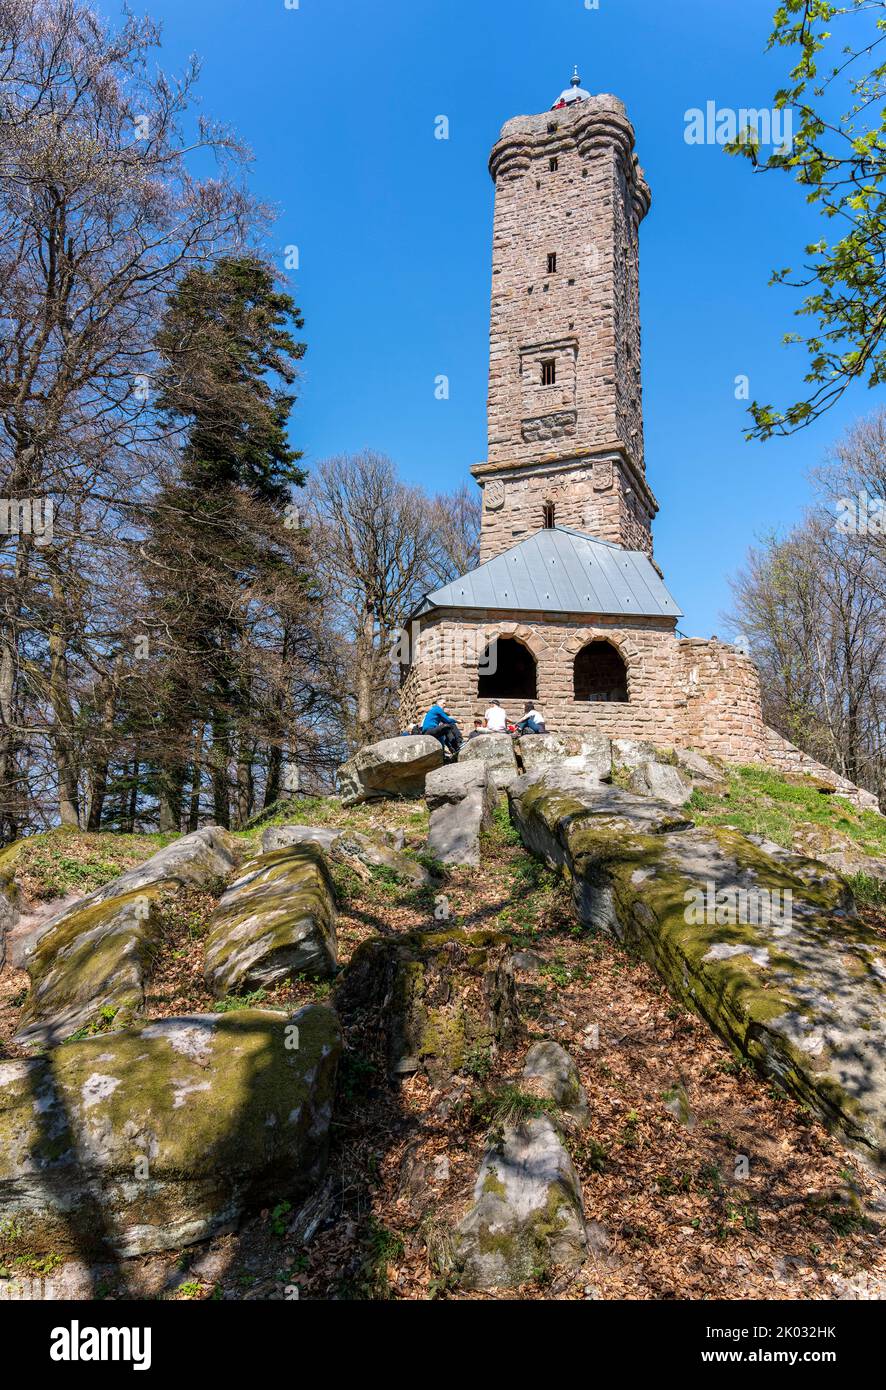 Der Luitpoldsturm (auch Luitpoldsturm genannt), aus rotem Sandstein bei Merzalben im Landkreis Südwestpfalz erbaut, ist ein 34,6 m hoher Aussichtsturm auf dem 609,9 m hohen Weißenberg, einem der höchsten Berge des Pfälzerwaldes. Stockfoto